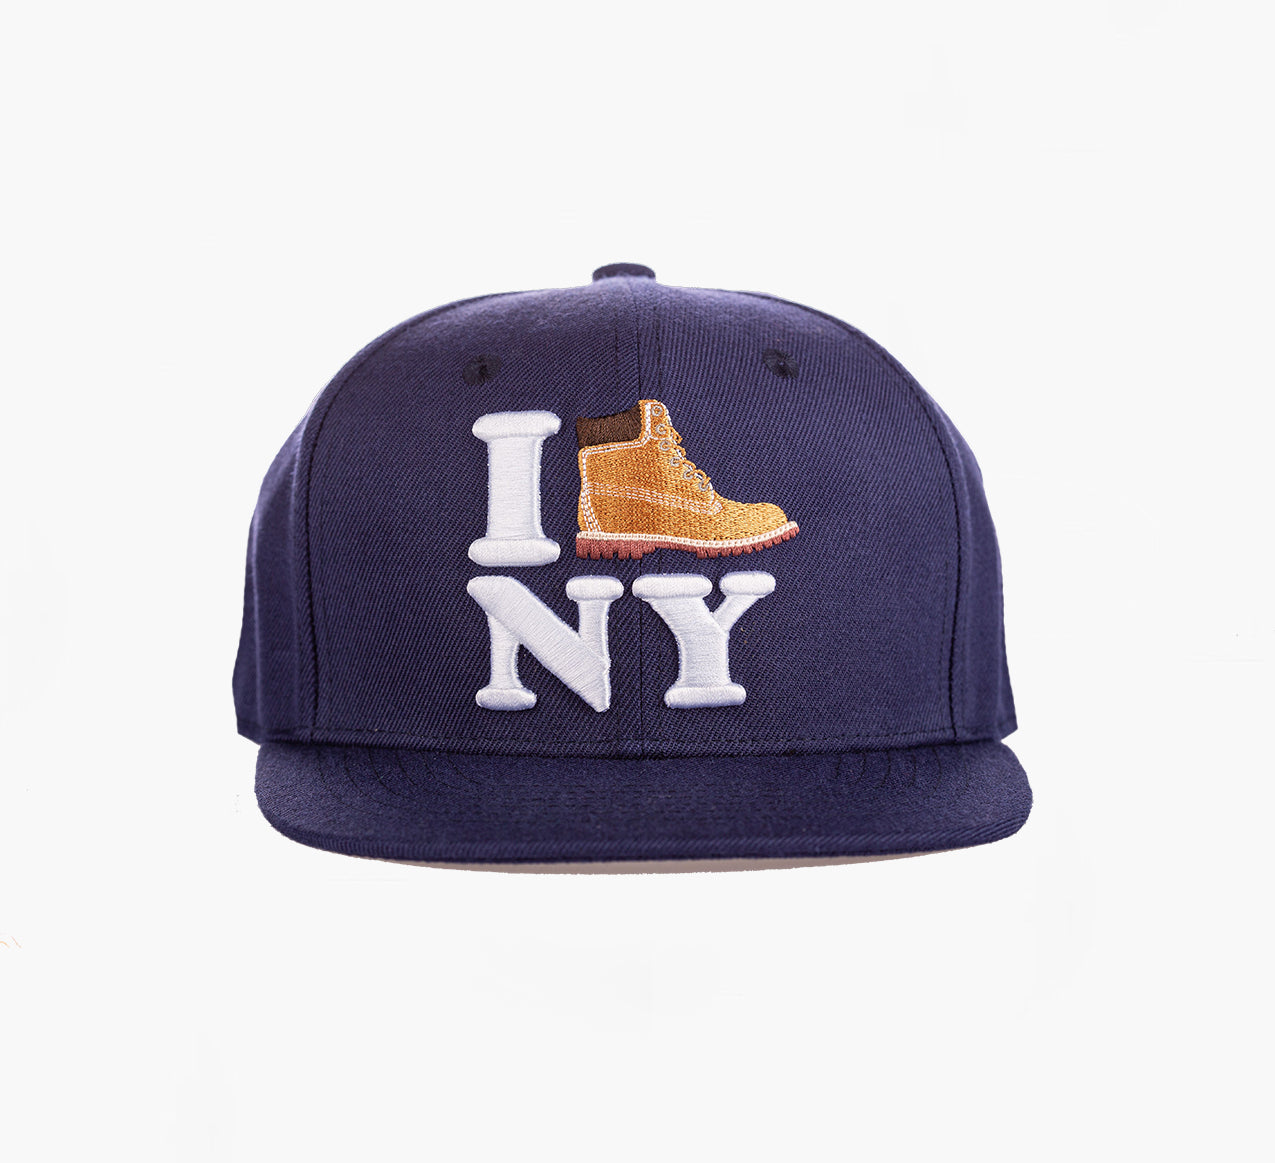 I Boot NY Navy Blue Snapback Hat